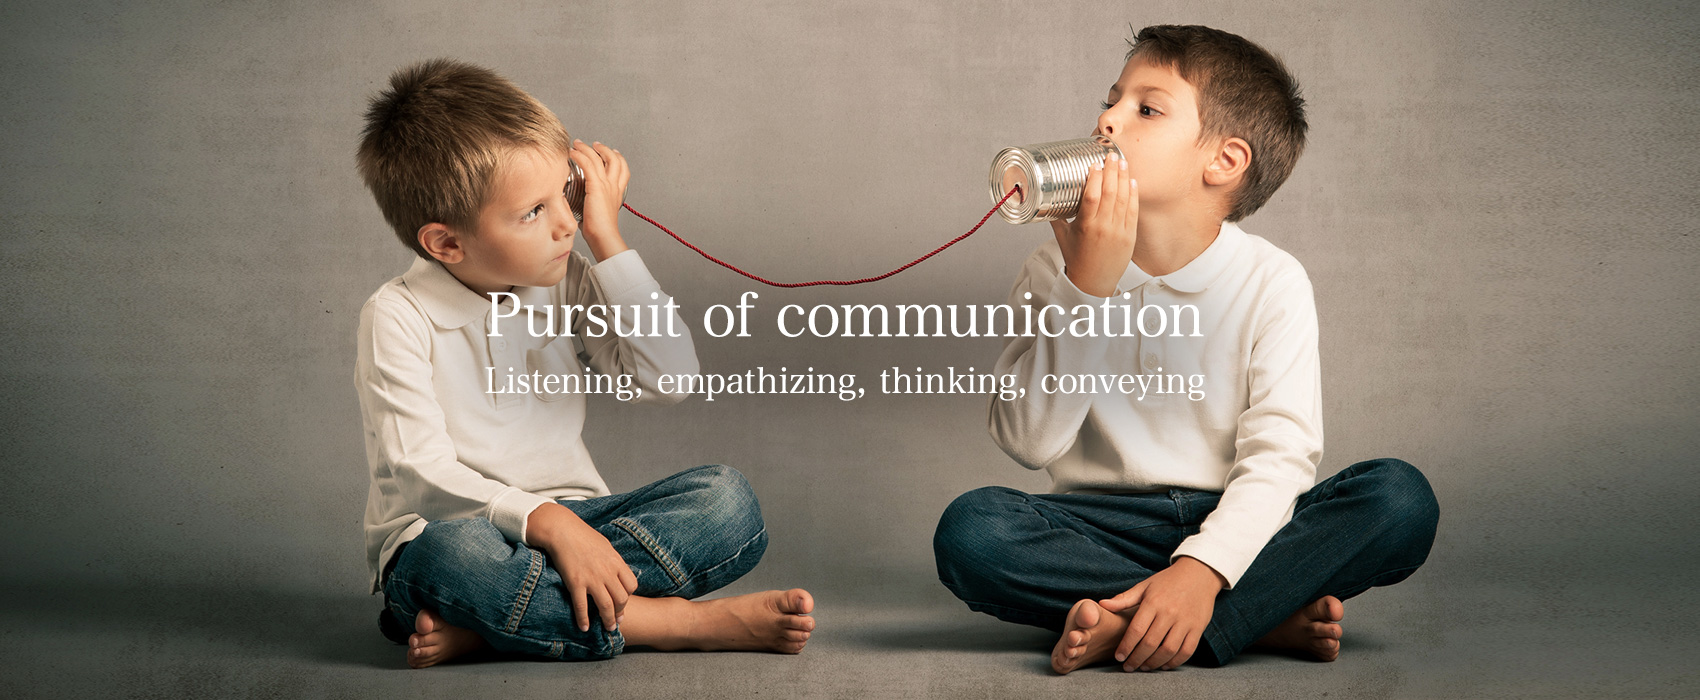 Pursuit of communication — Listening, empathizing, thinking, conveying